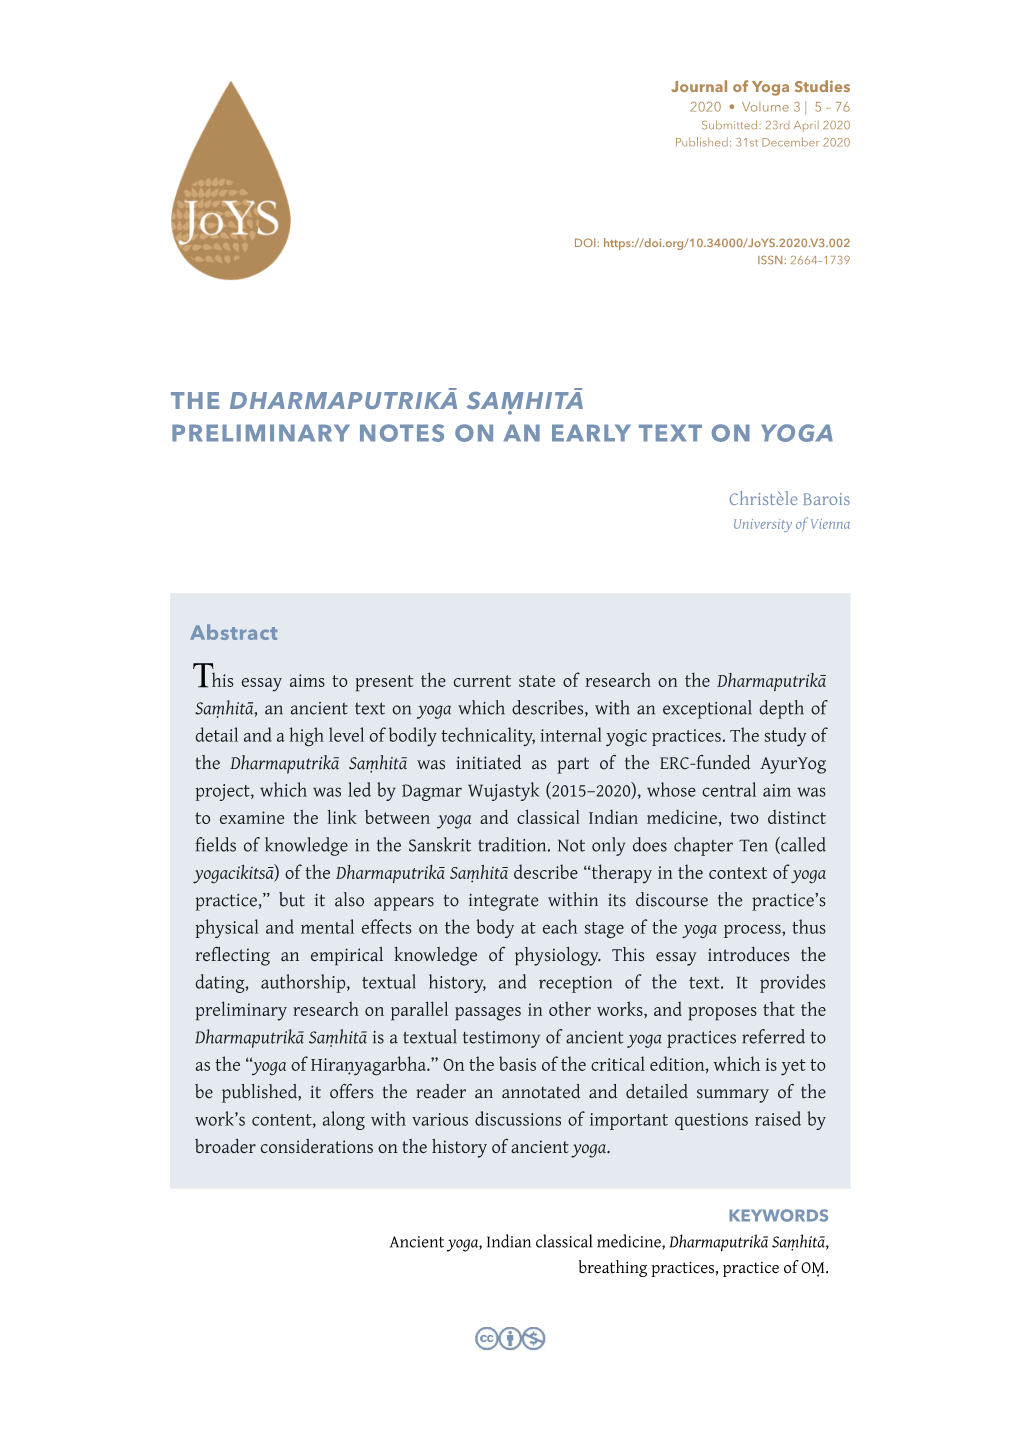 The Dharmaputrikā Saṃhitā Preliminary Notes on an Early Text on Yoga